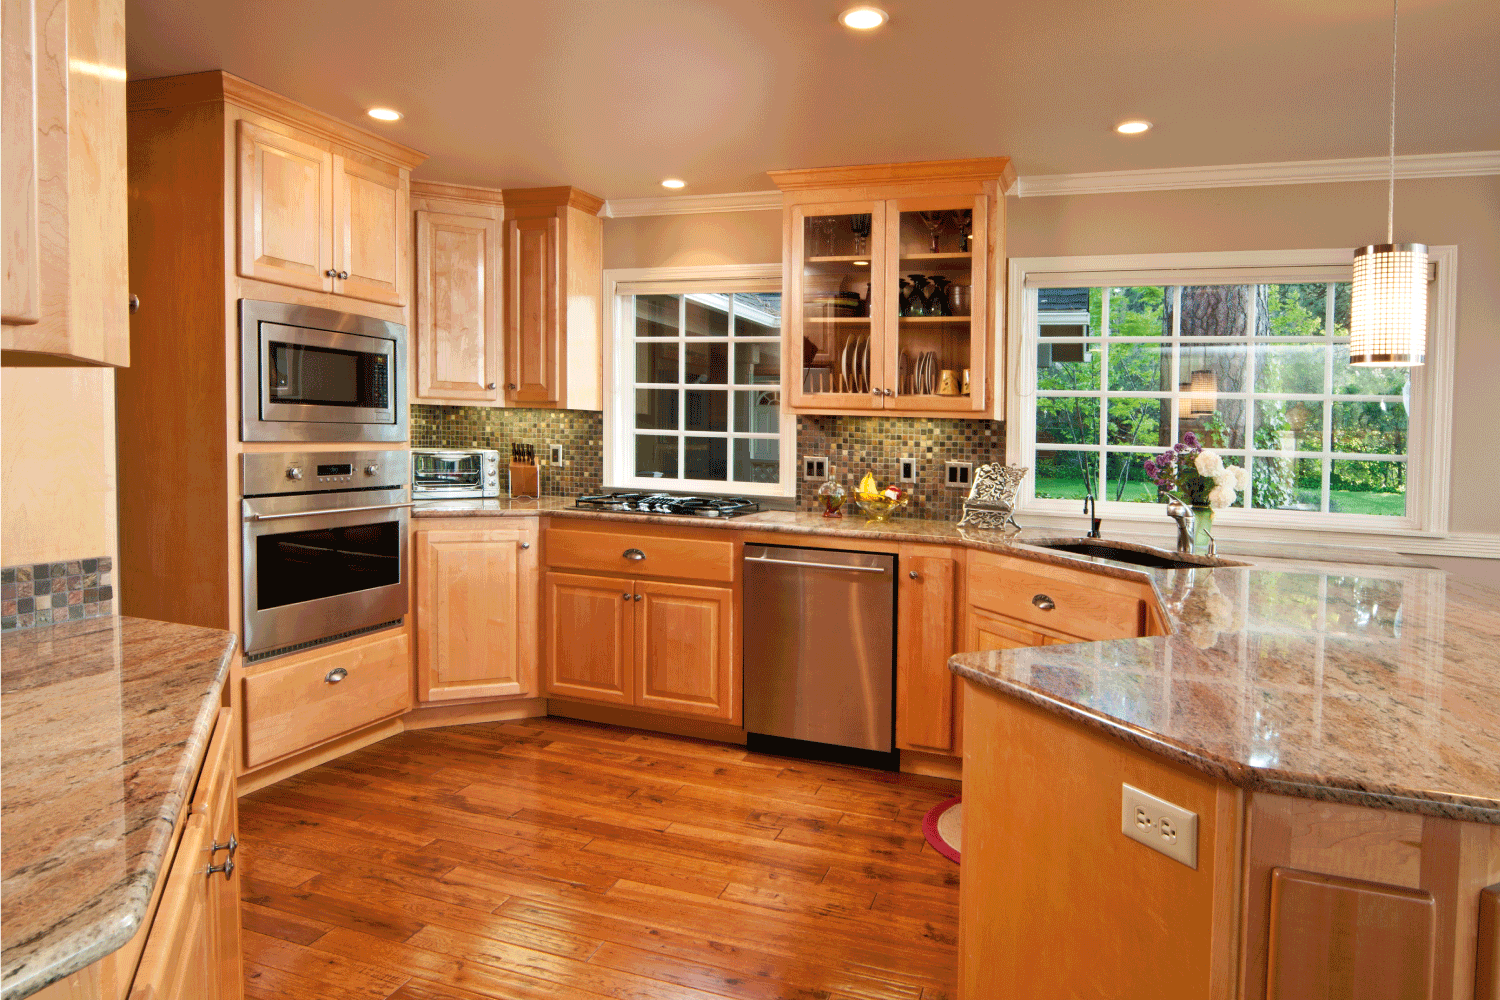 这个现代化的厨房提供了广bd手机下载阔的视野，可以看到木地板和橱柜。经典的木质外观